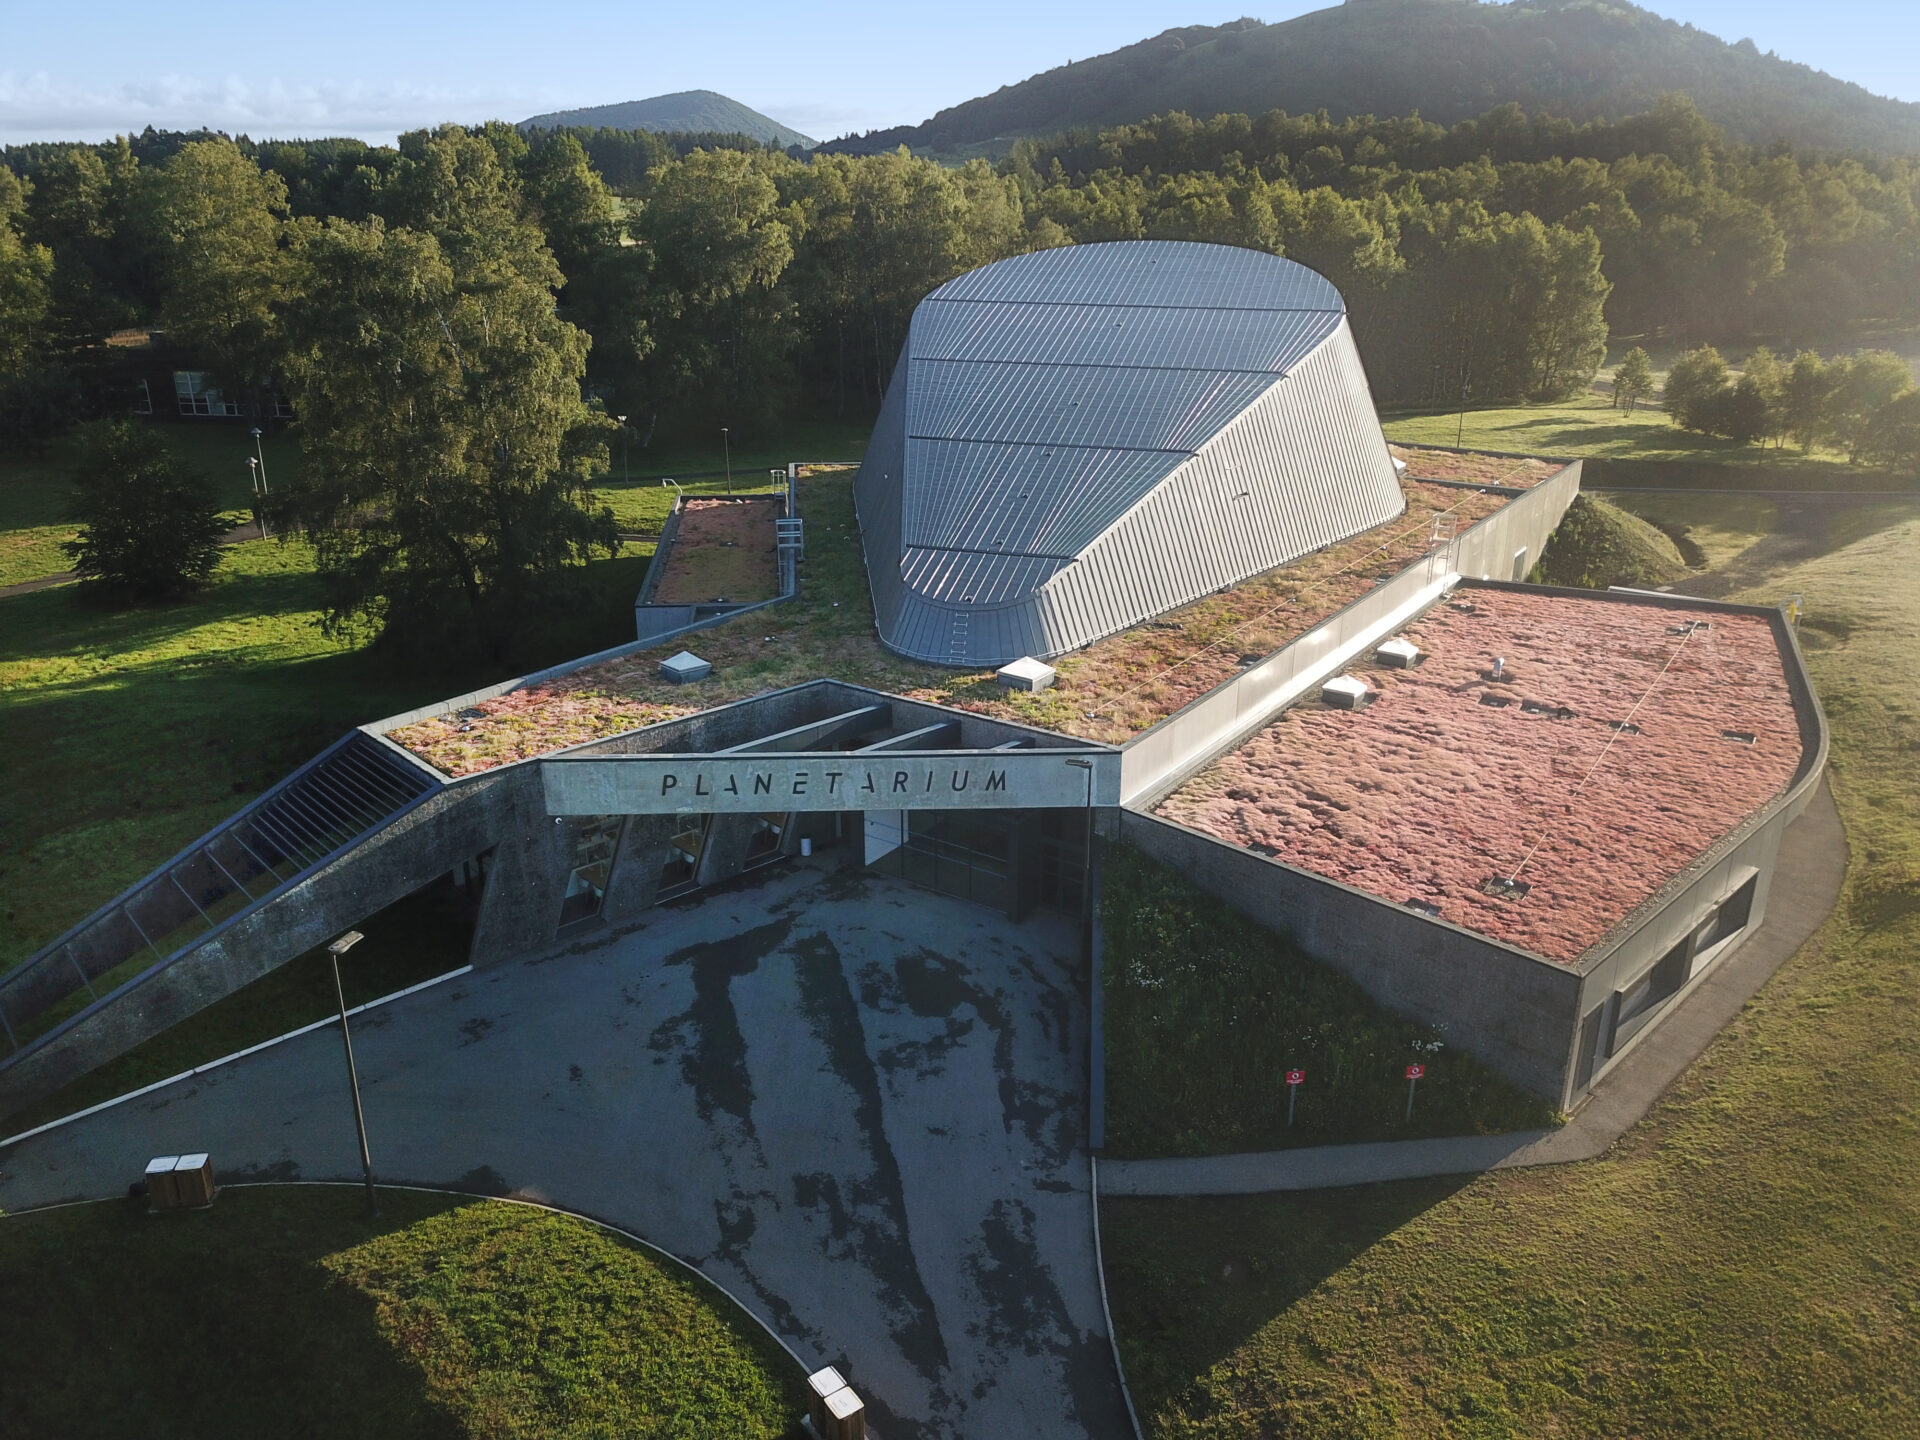 Lire la suite à propos de l’article De l’analyse fonctionnelle à l’installation, Yousense intervient pour le parc d’attractions et d’animations Vulcania situé en Auvergne.